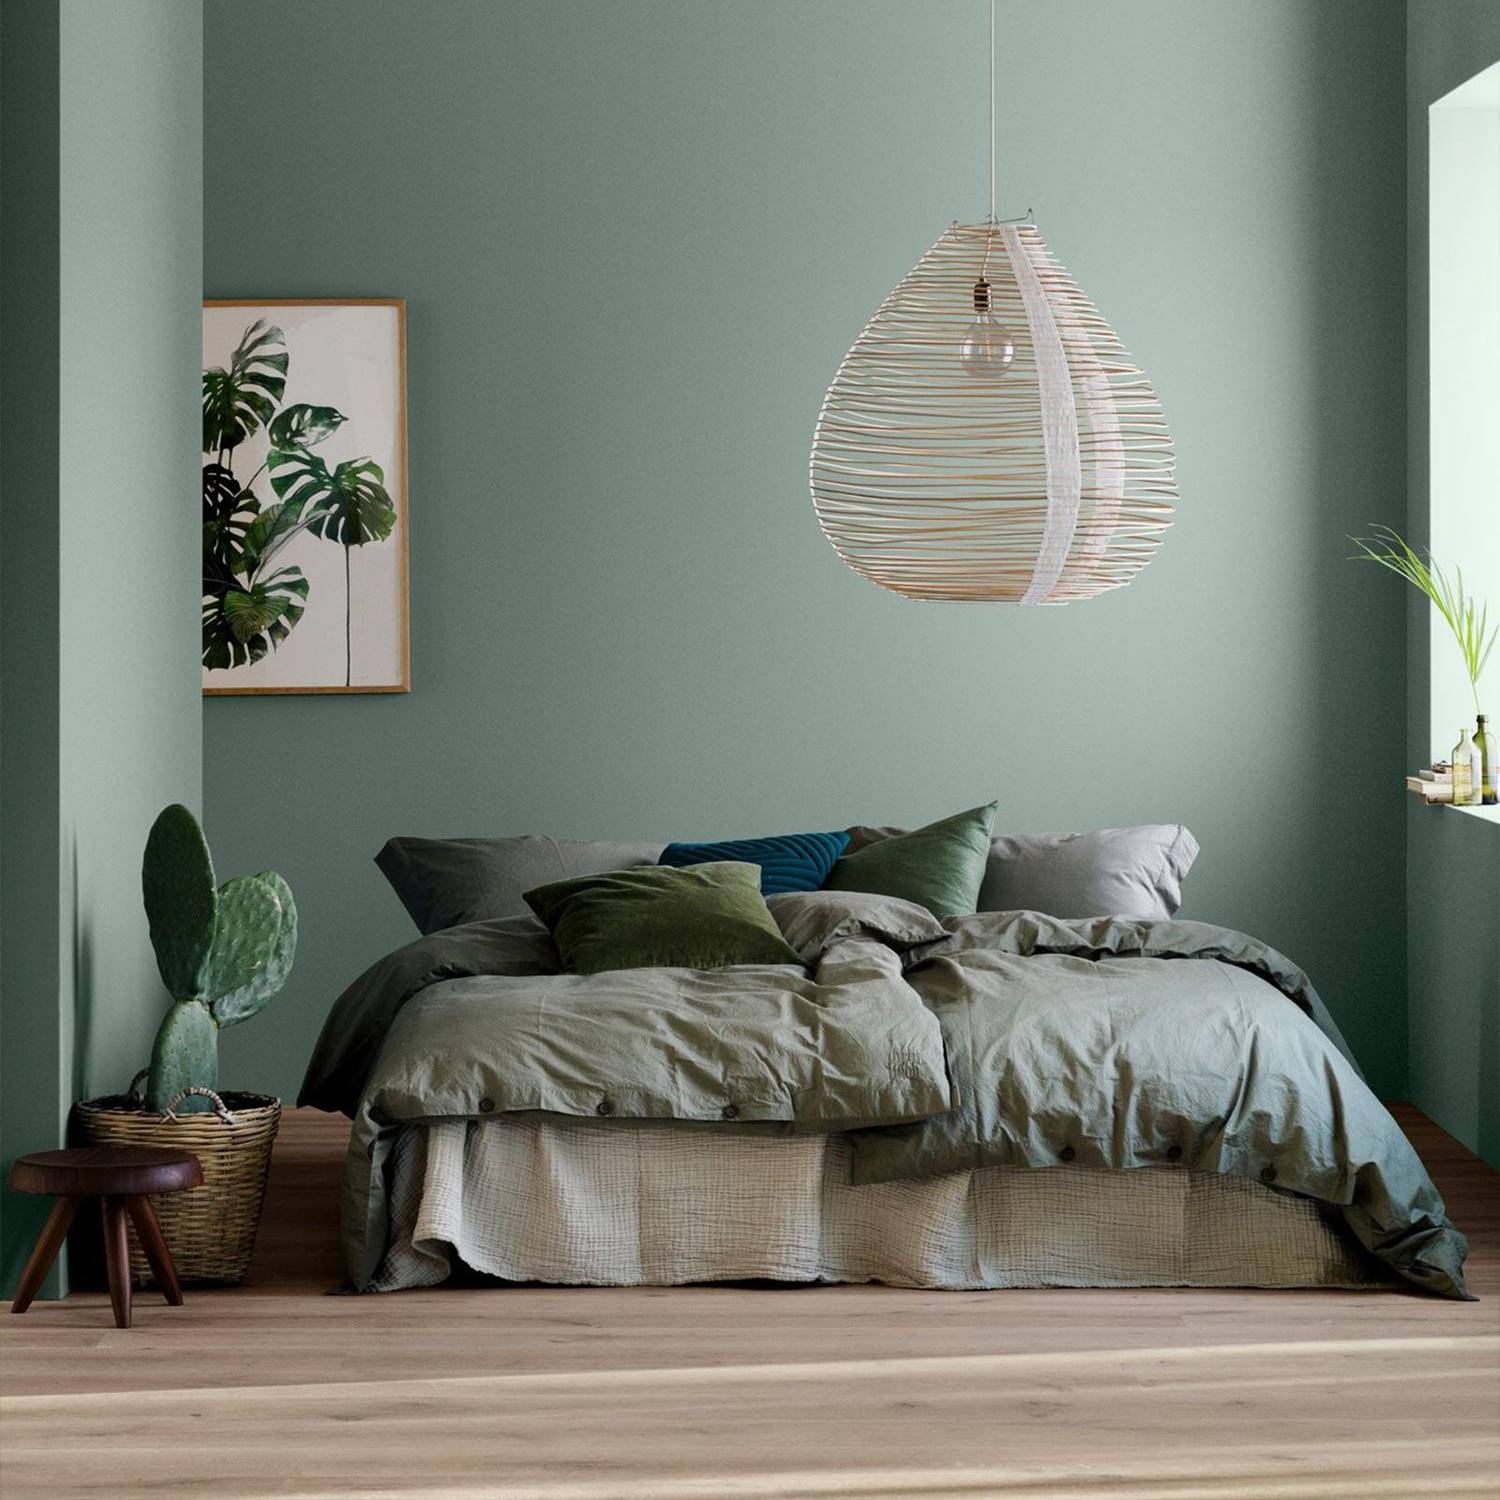 Posible combinación de tonalidades para un dormitorio en color verde